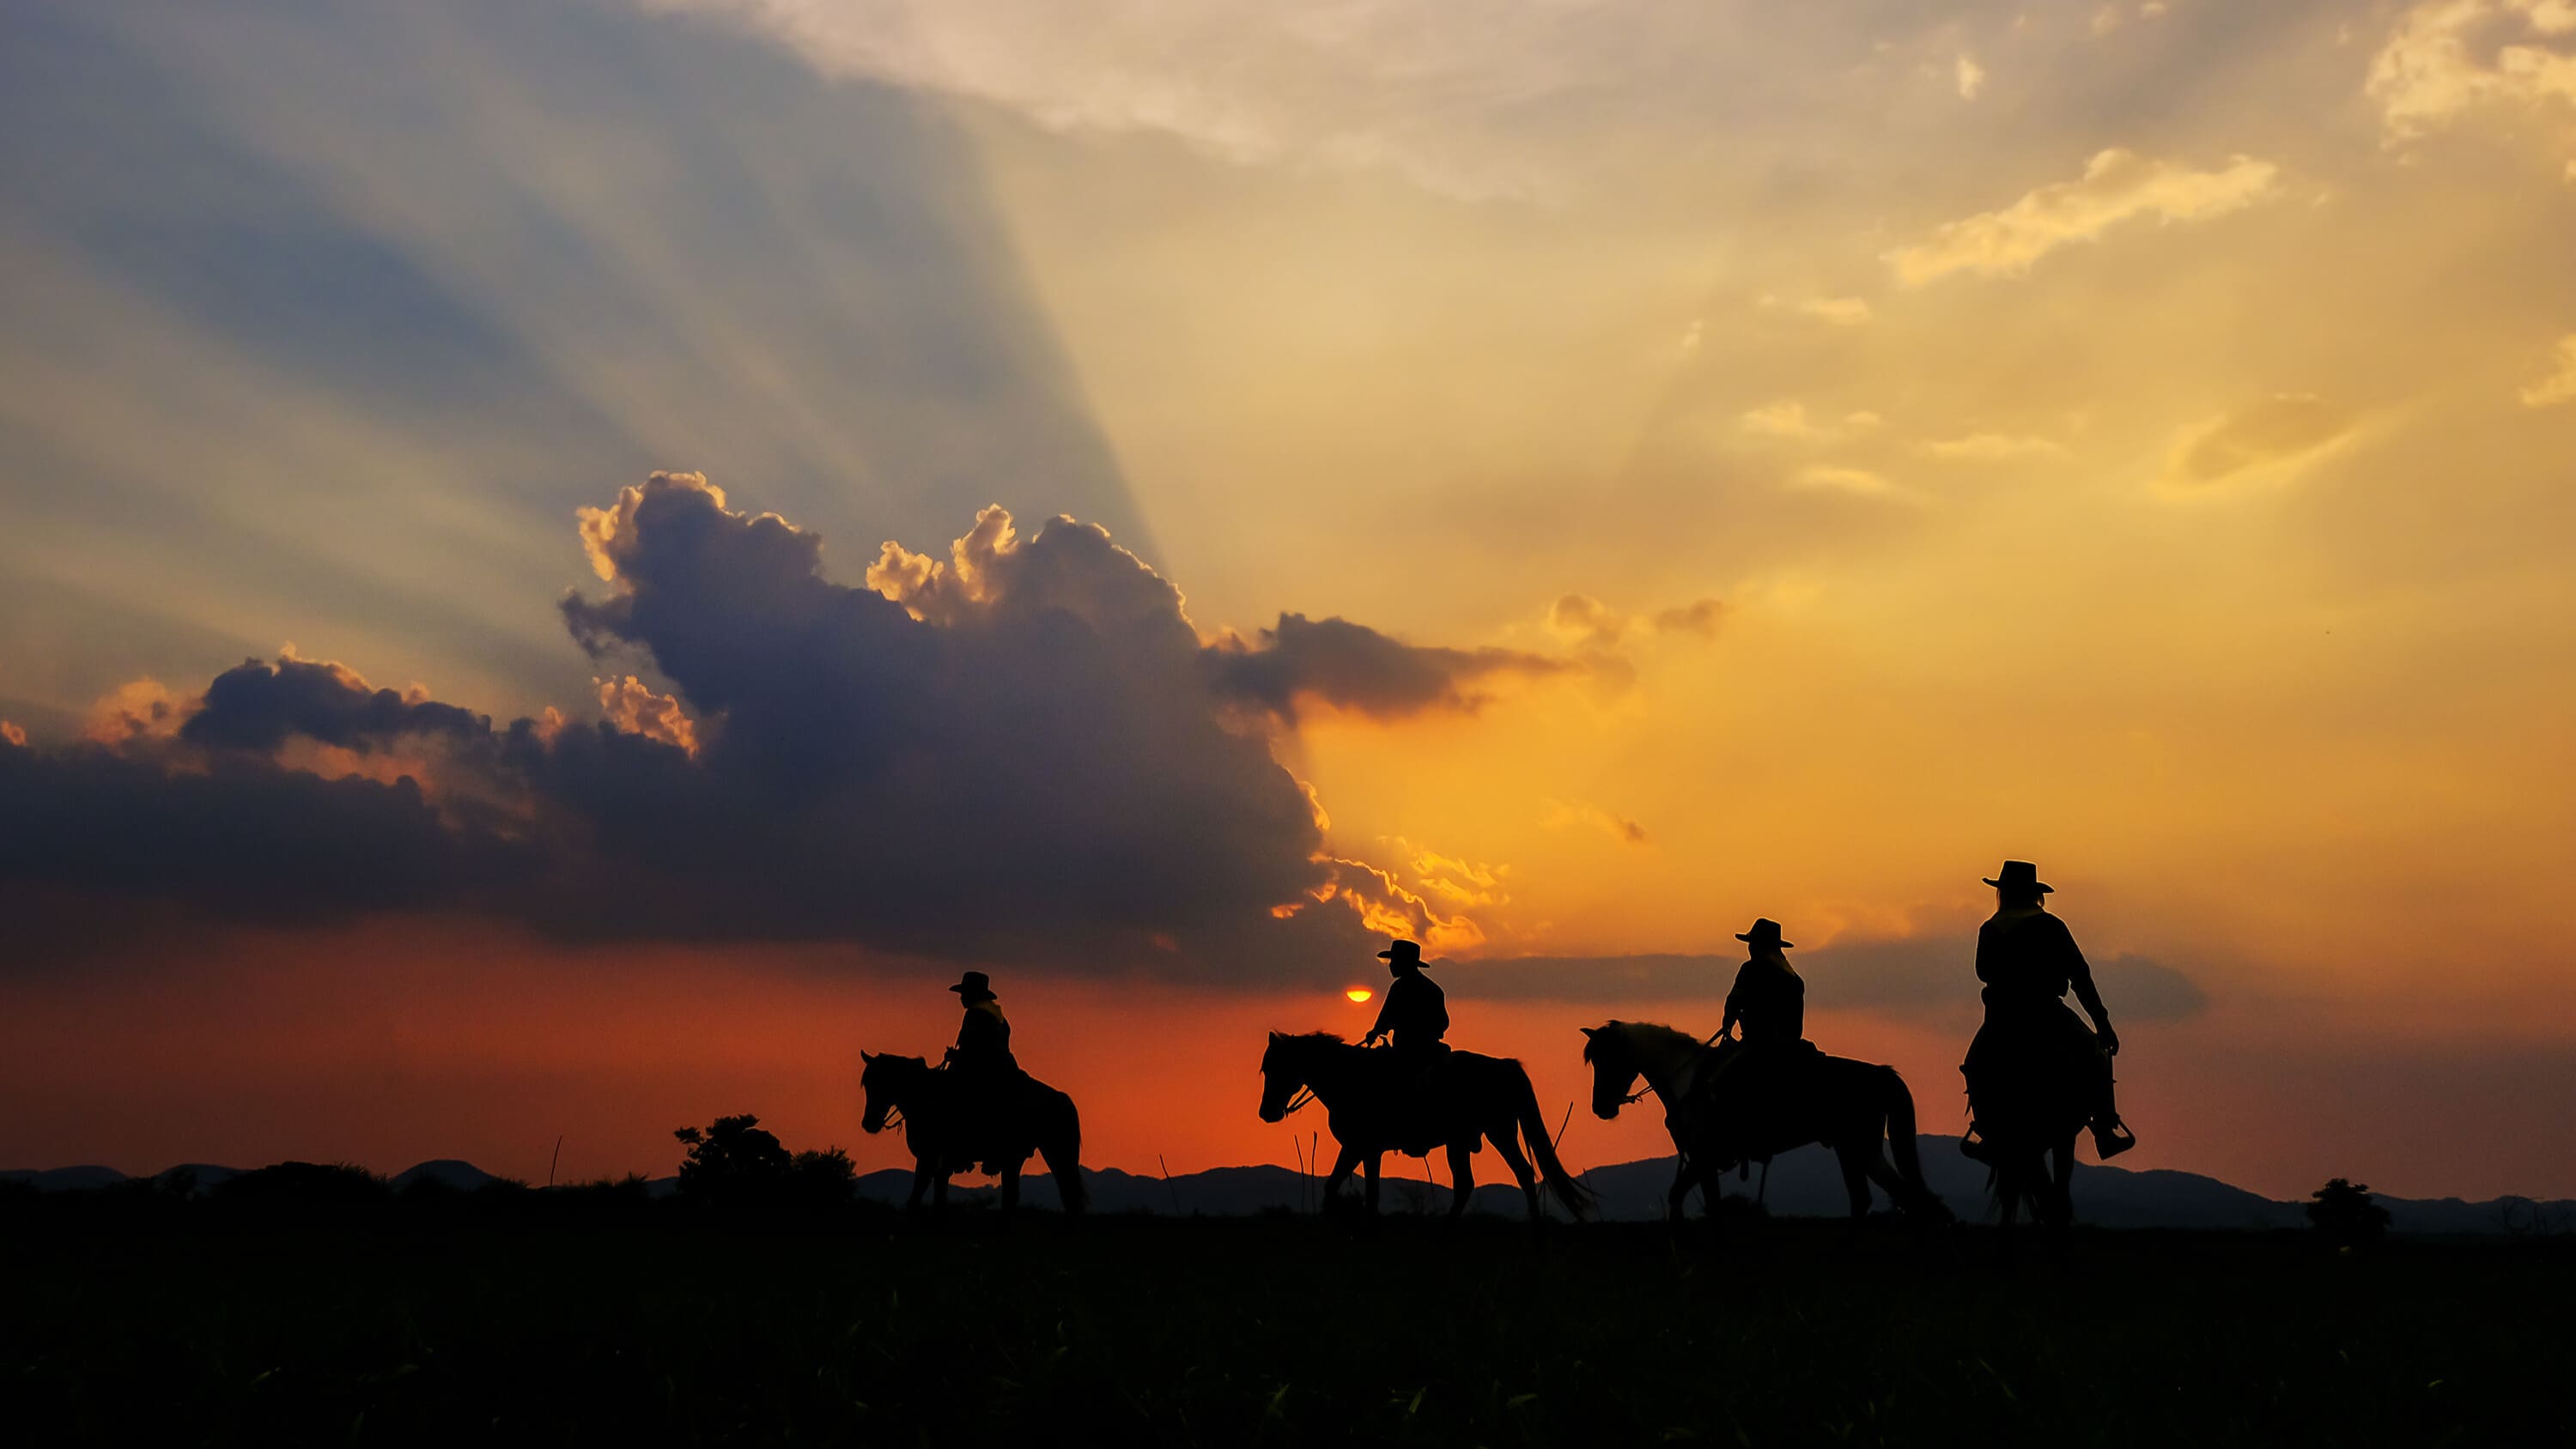 Cowboys au coucher de soleil avec leur materiel d'equitation.